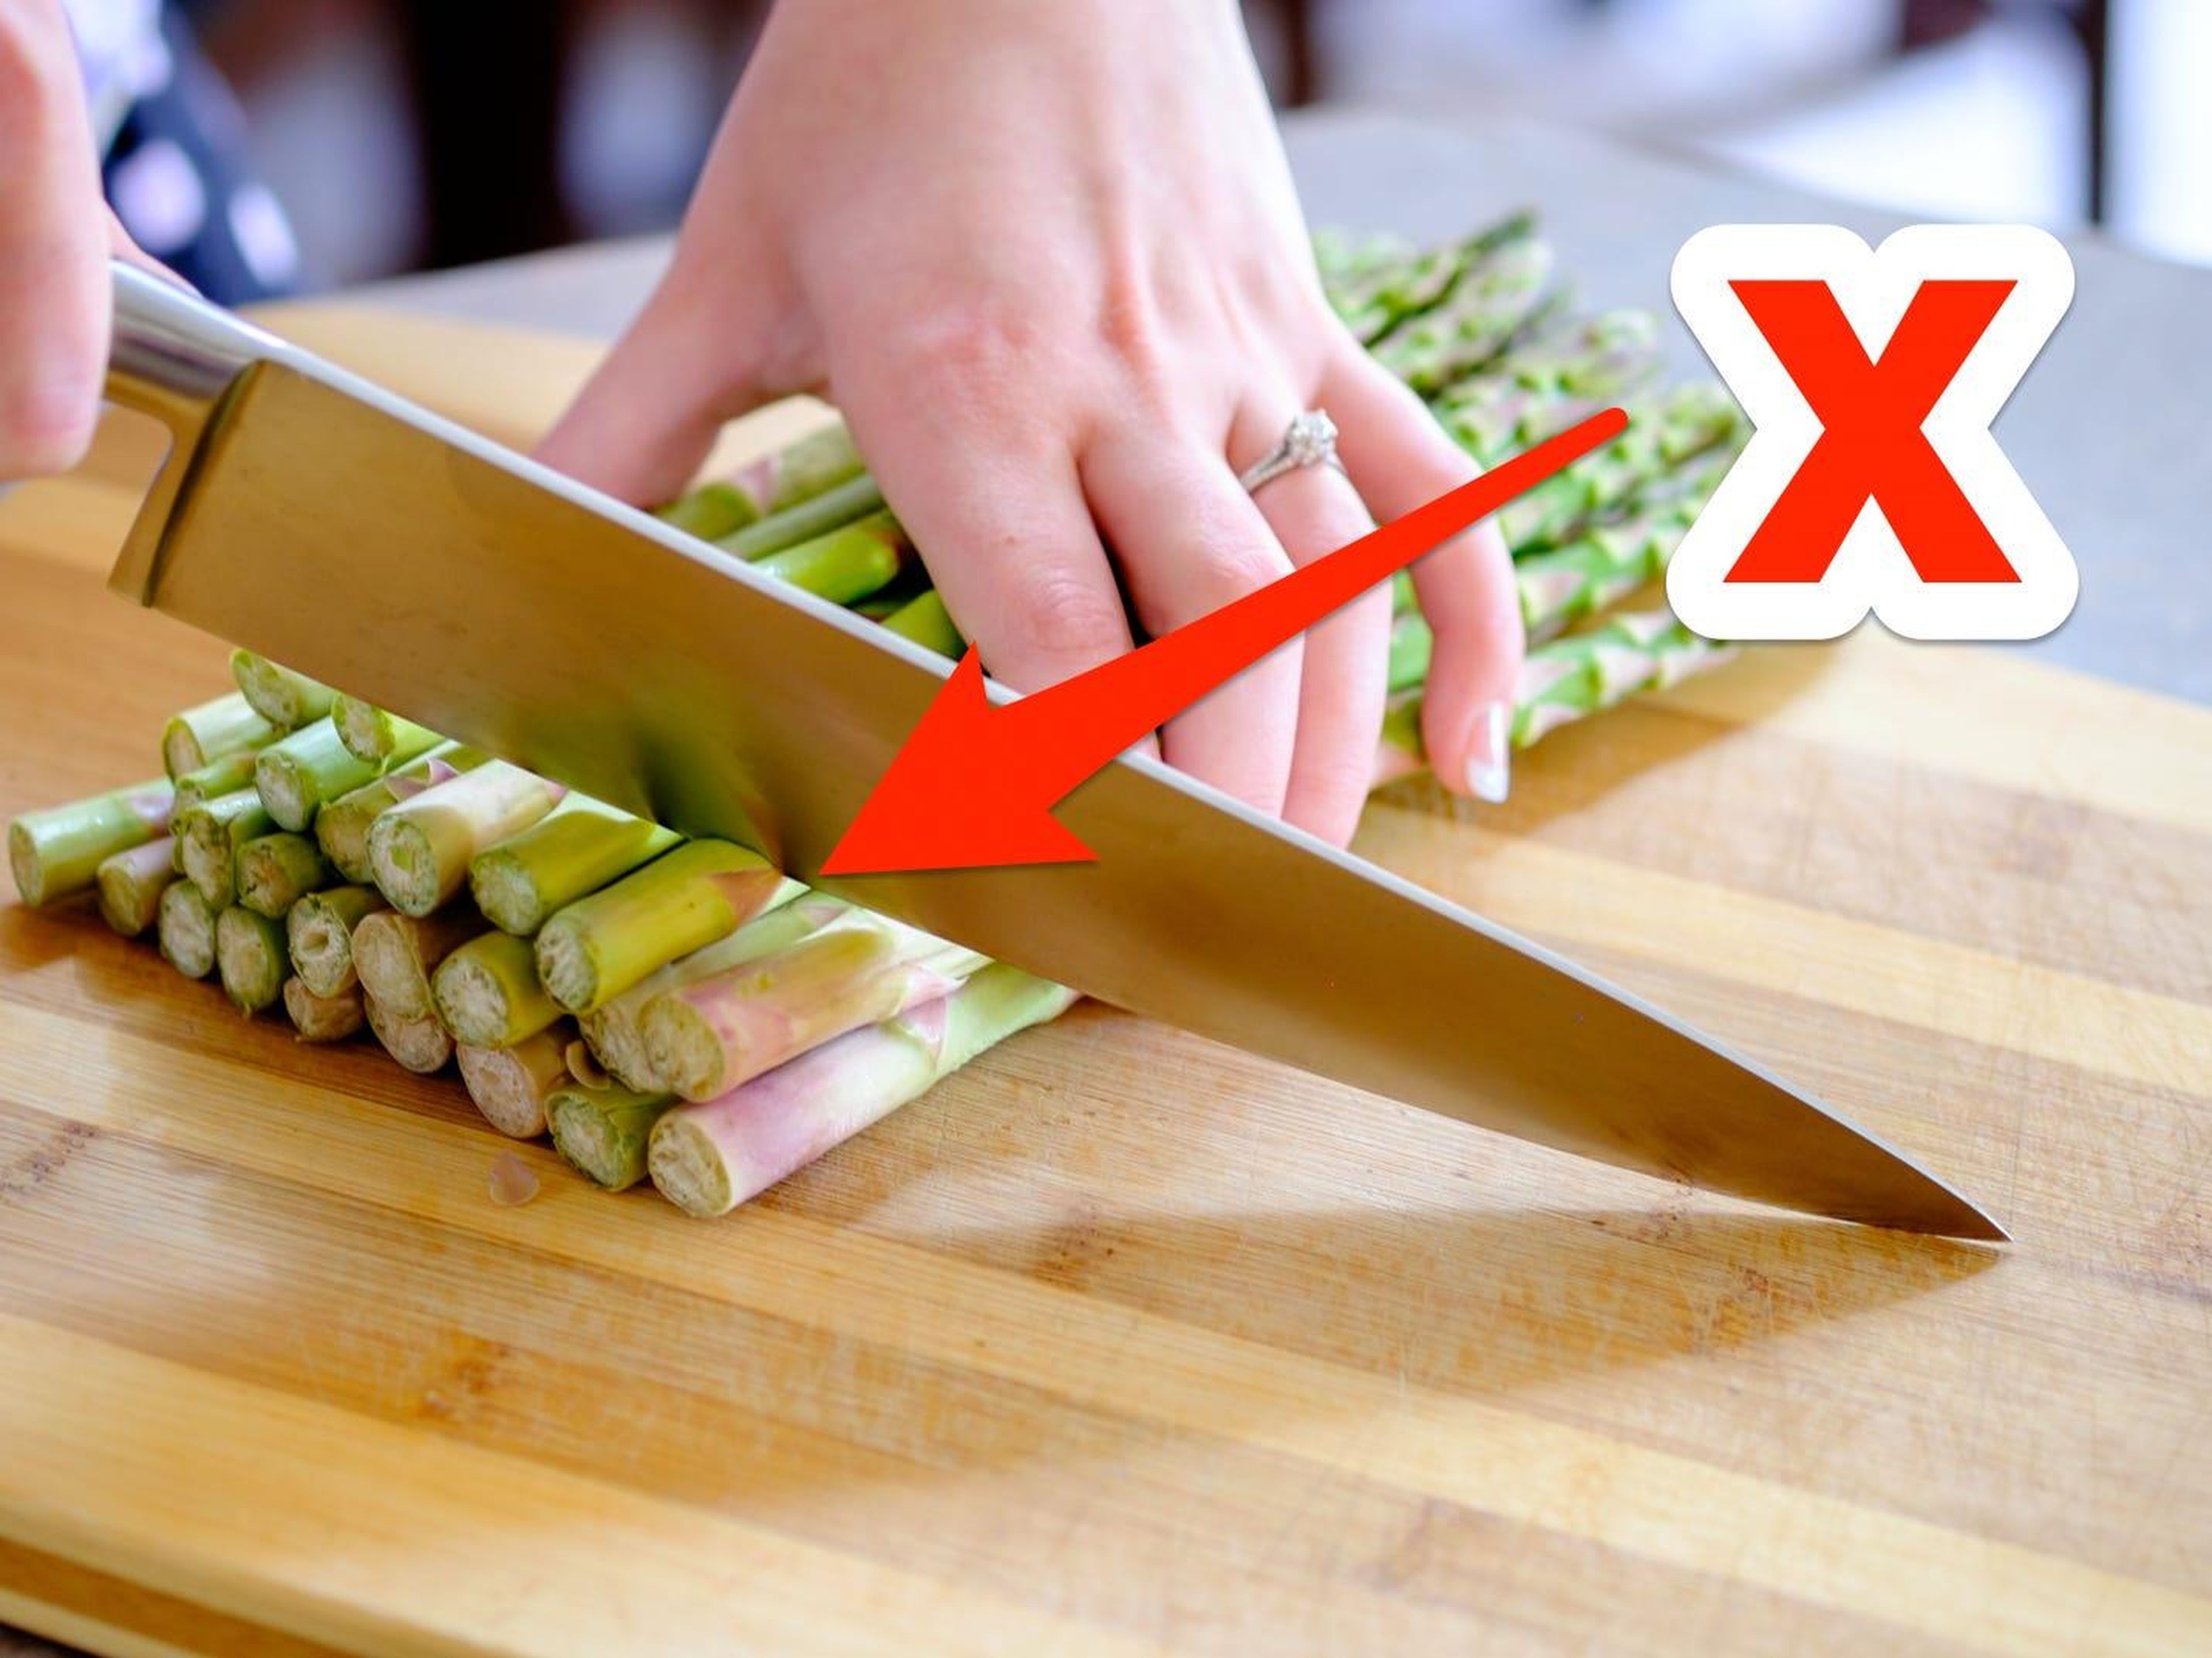 Romper los espárragos a mano ayuda a garantizar que se elimine el extremo duro de la verdura.